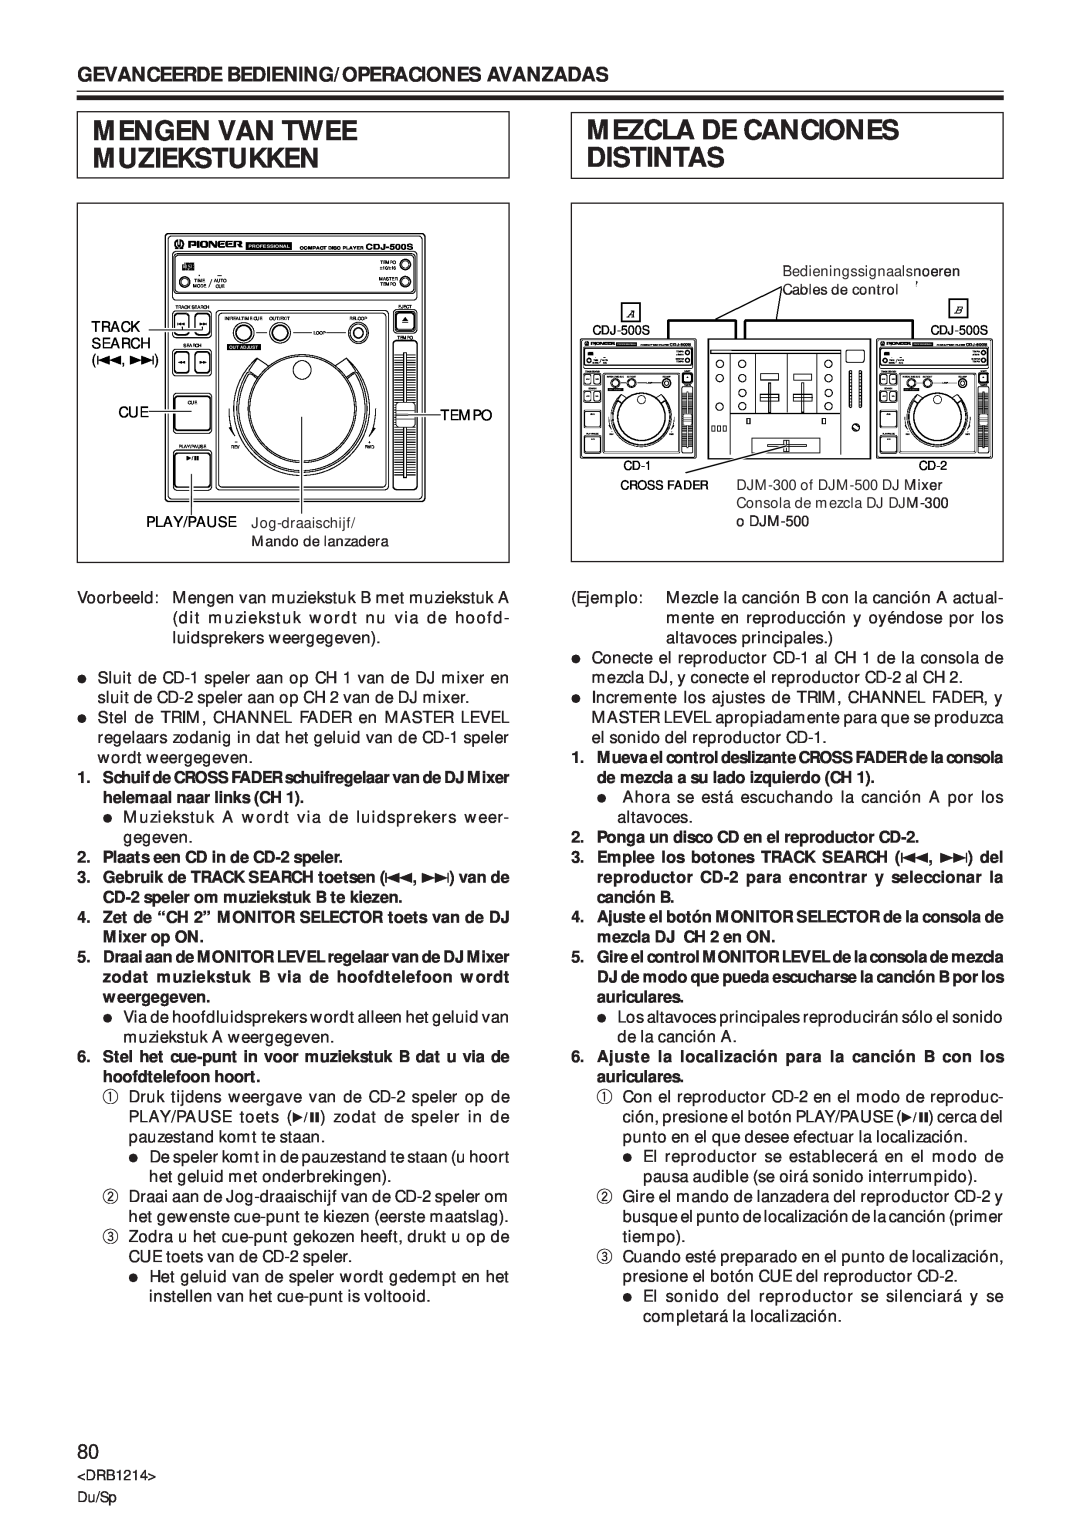 Pioneer CDJ-500S Mengen Van Twee Muziekstukken, Mezcla De Canciones Distintas, Gevanceerde Bediening/Operaciones Avanzadas 